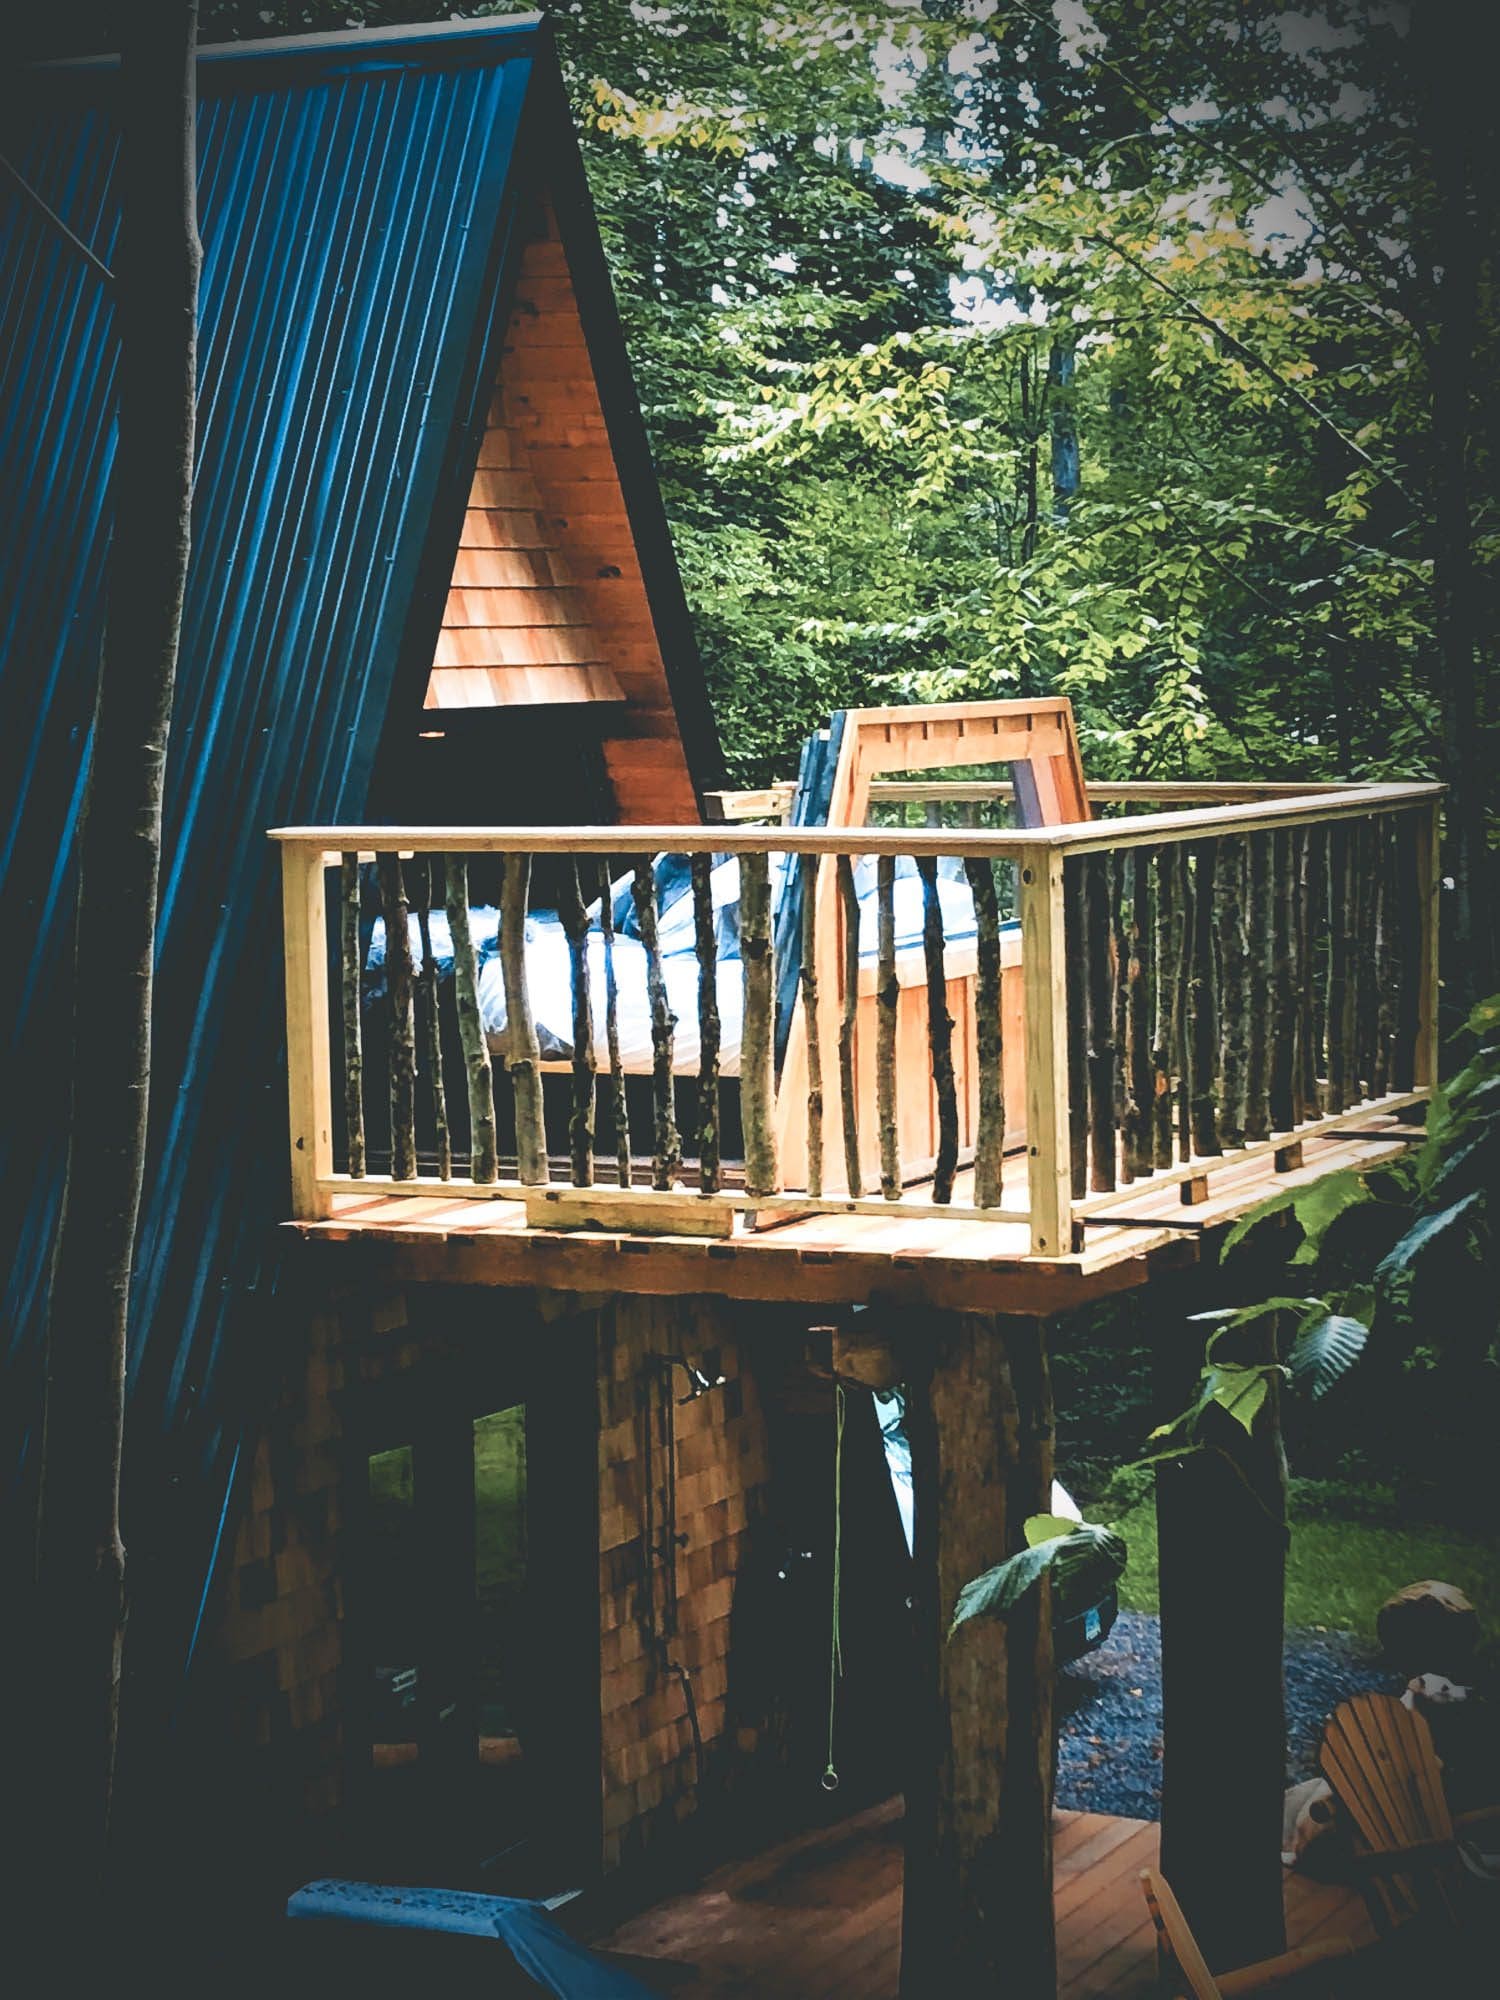 Airbnb, Airbnb Finds: romantische cabin in New York met buitenbed